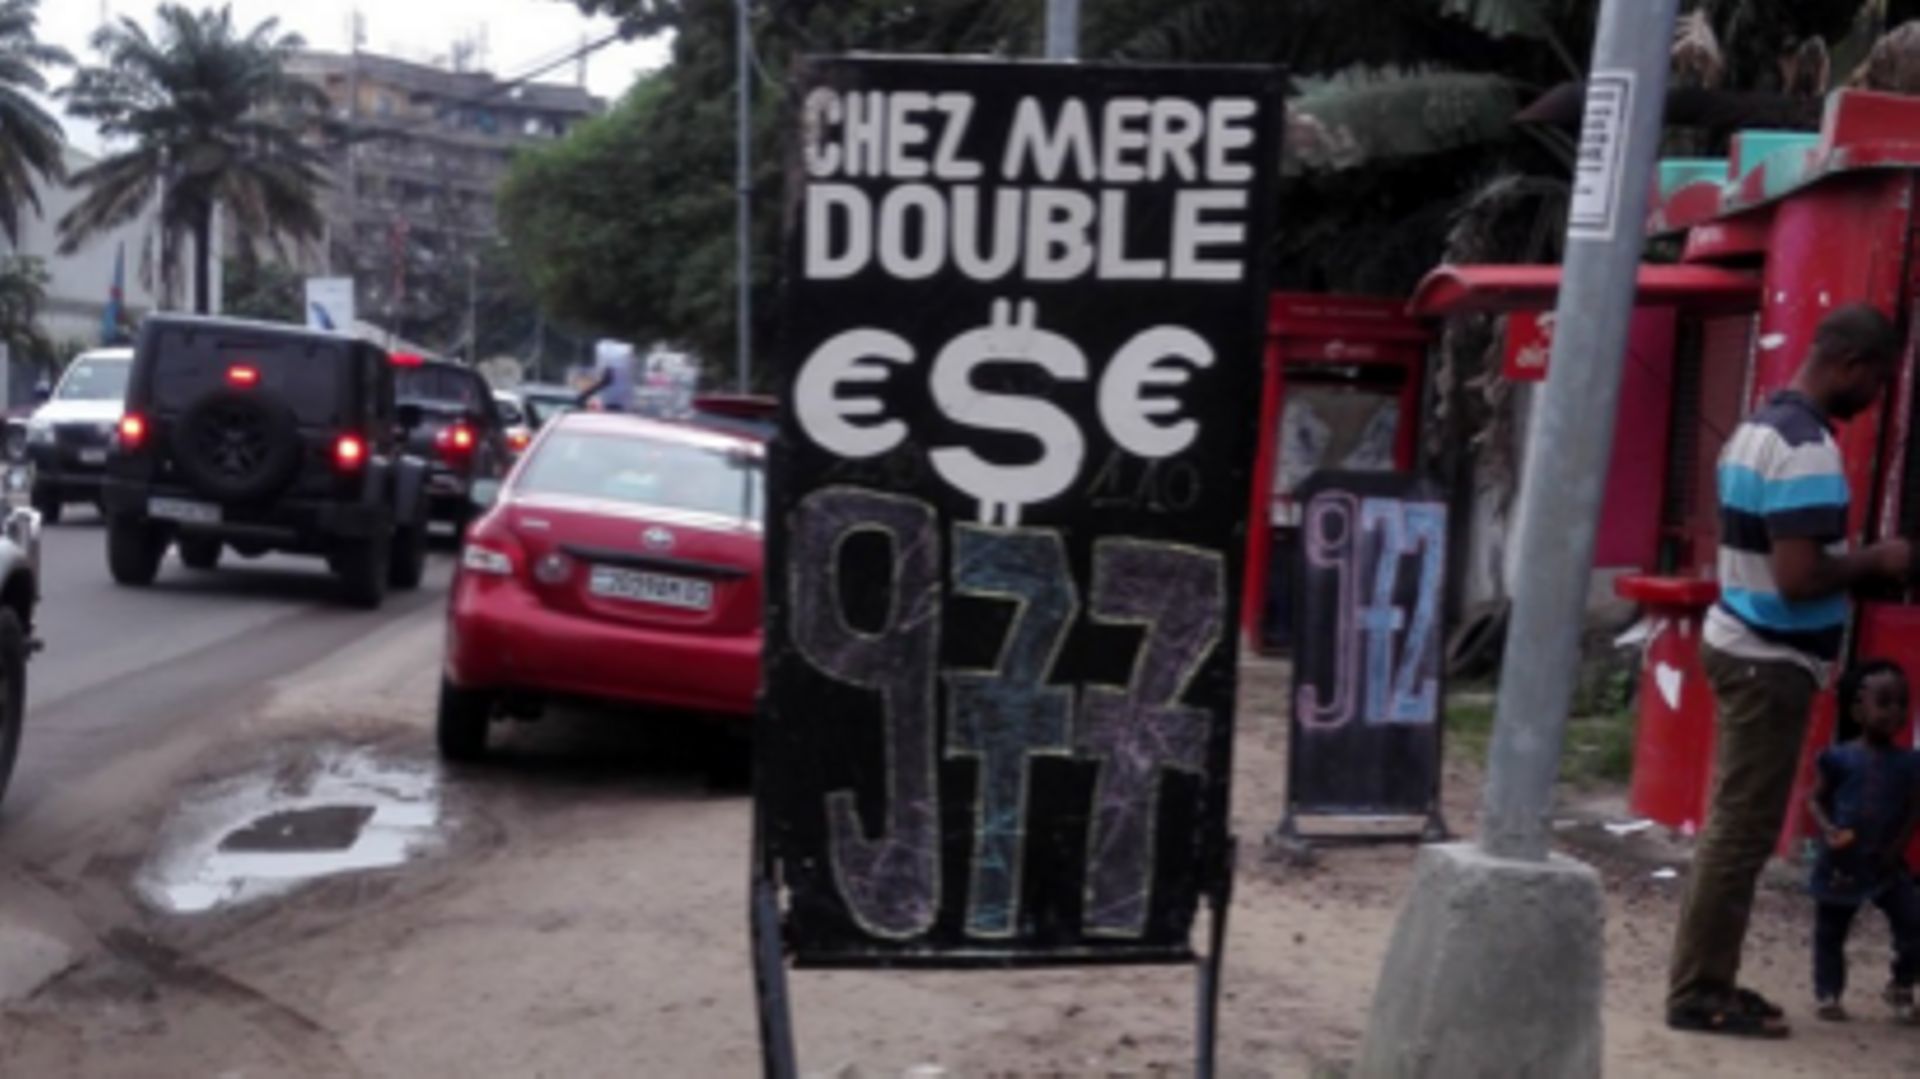 Au grand marché de Kinshasa, "même le prix du piment a augmenté"